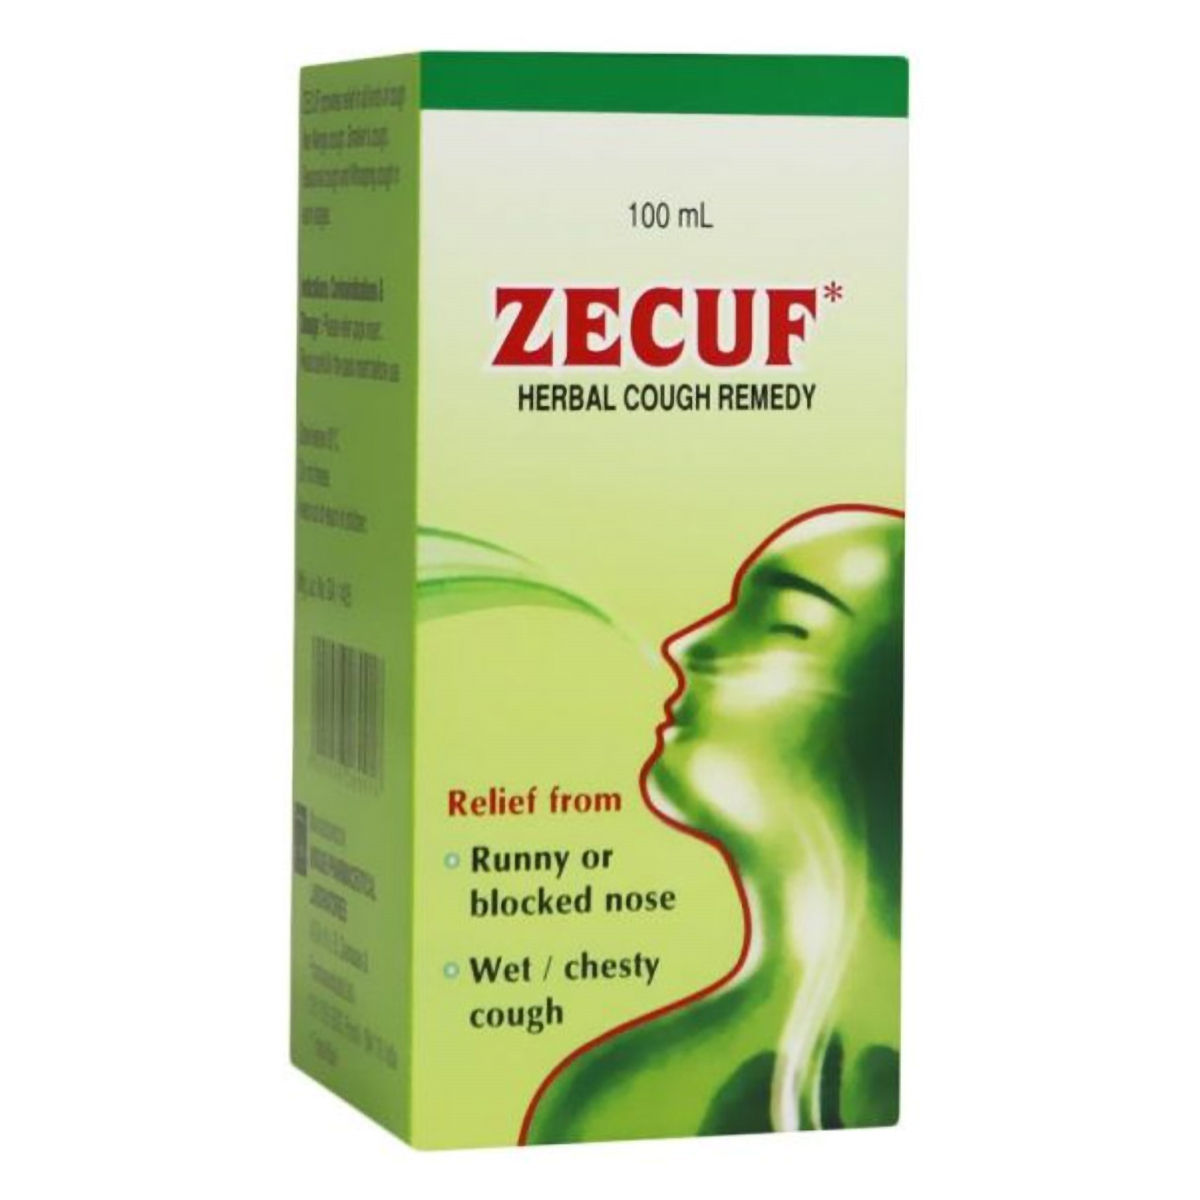 Buy Zecuf Herbal Cough Remedy, 100 ml Online